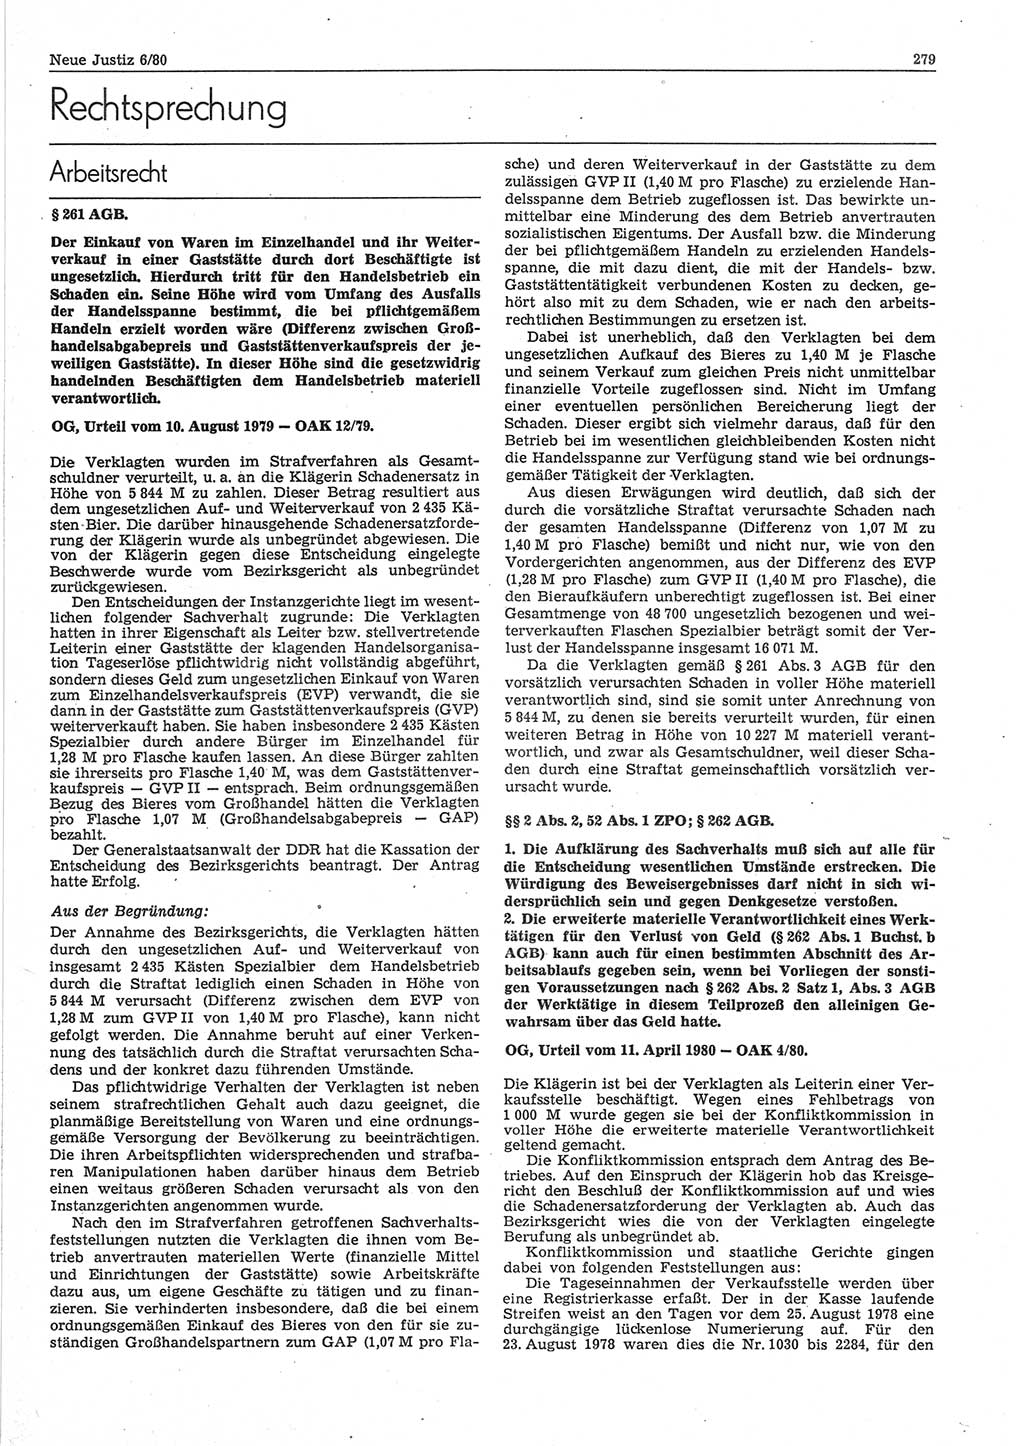 Neue Justiz (NJ), Zeitschrift für sozialistisches Recht und Gesetzlichkeit [Deutsche Demokratische Republik (DDR)], 34. Jahrgang 1980, Seite 279 (NJ DDR 1980, S. 279)